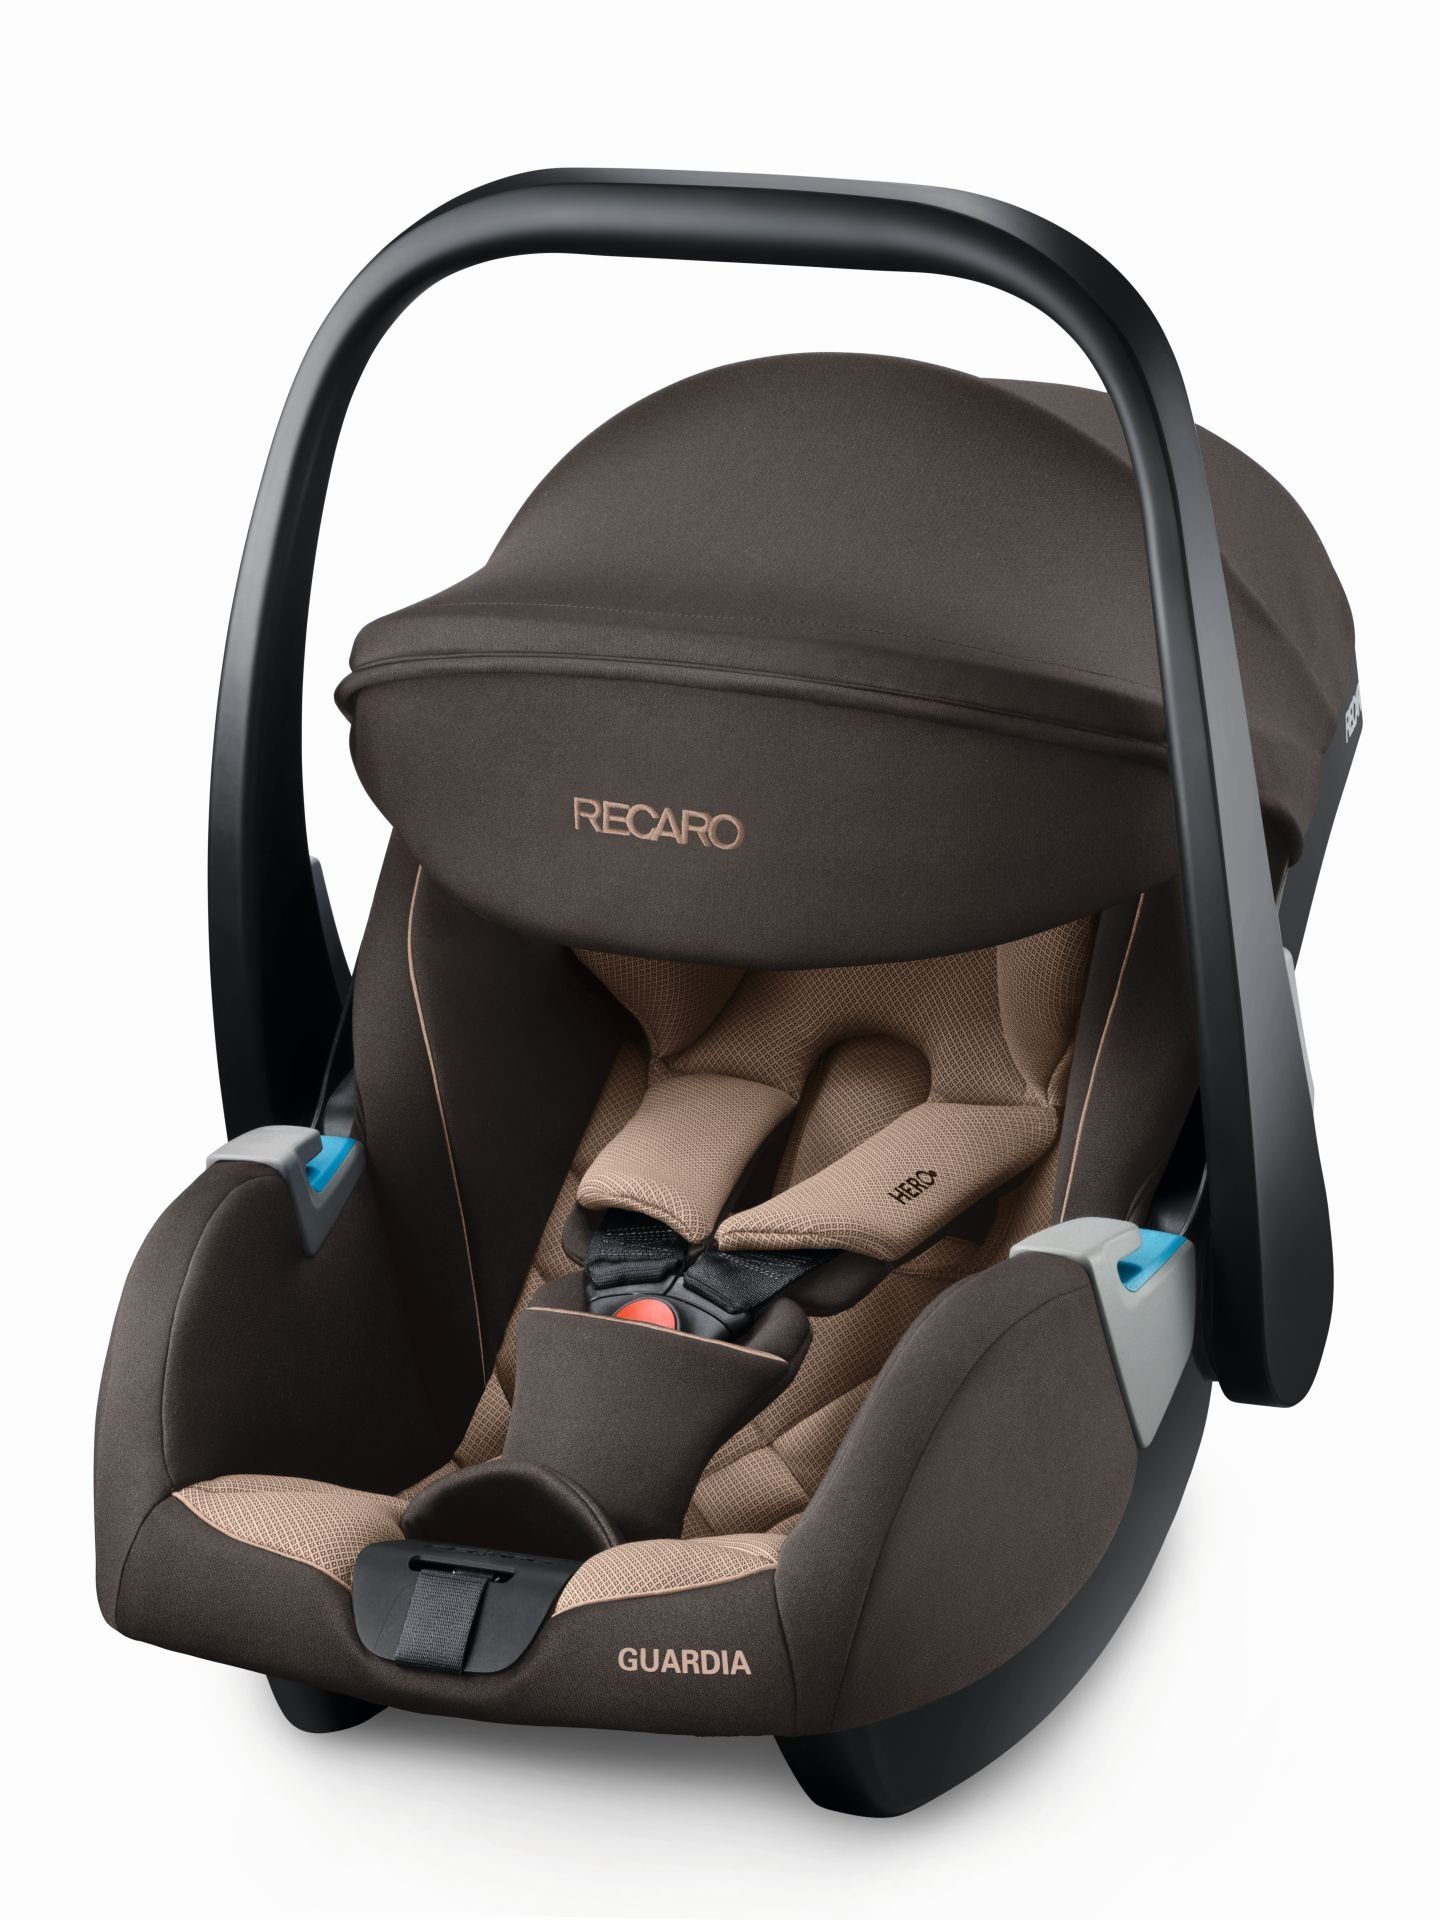 RECARO Autokindersitz Recaro Guardia Babyschale/Kindersitz